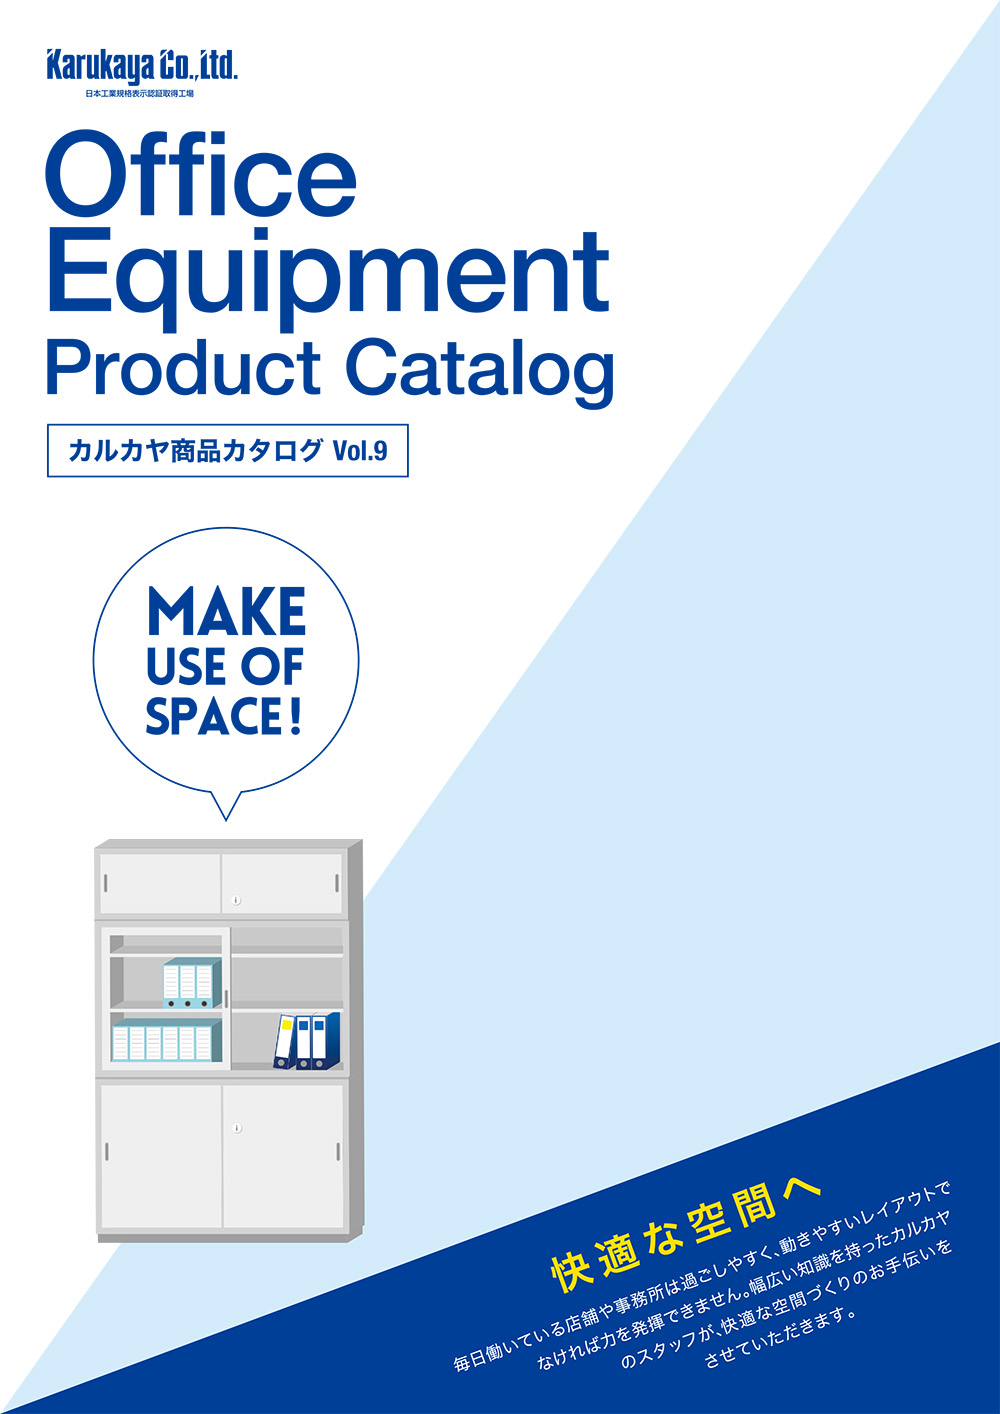 ユニバース 取扱商品 Karukaya Office Equipnebt Product Catalog サムネイル